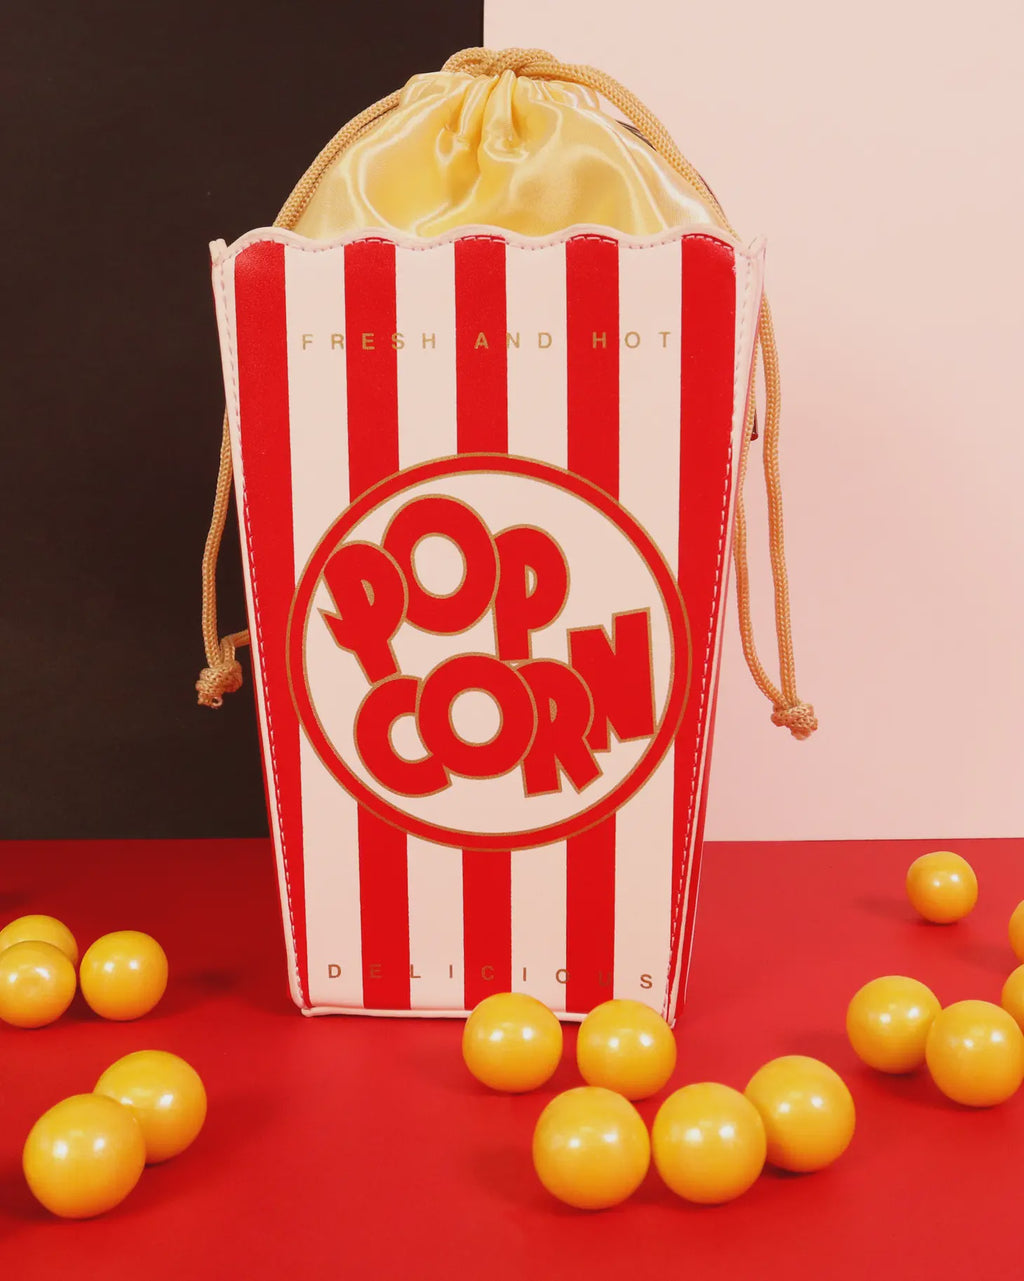 Fresh & Hot Popcorn Bag